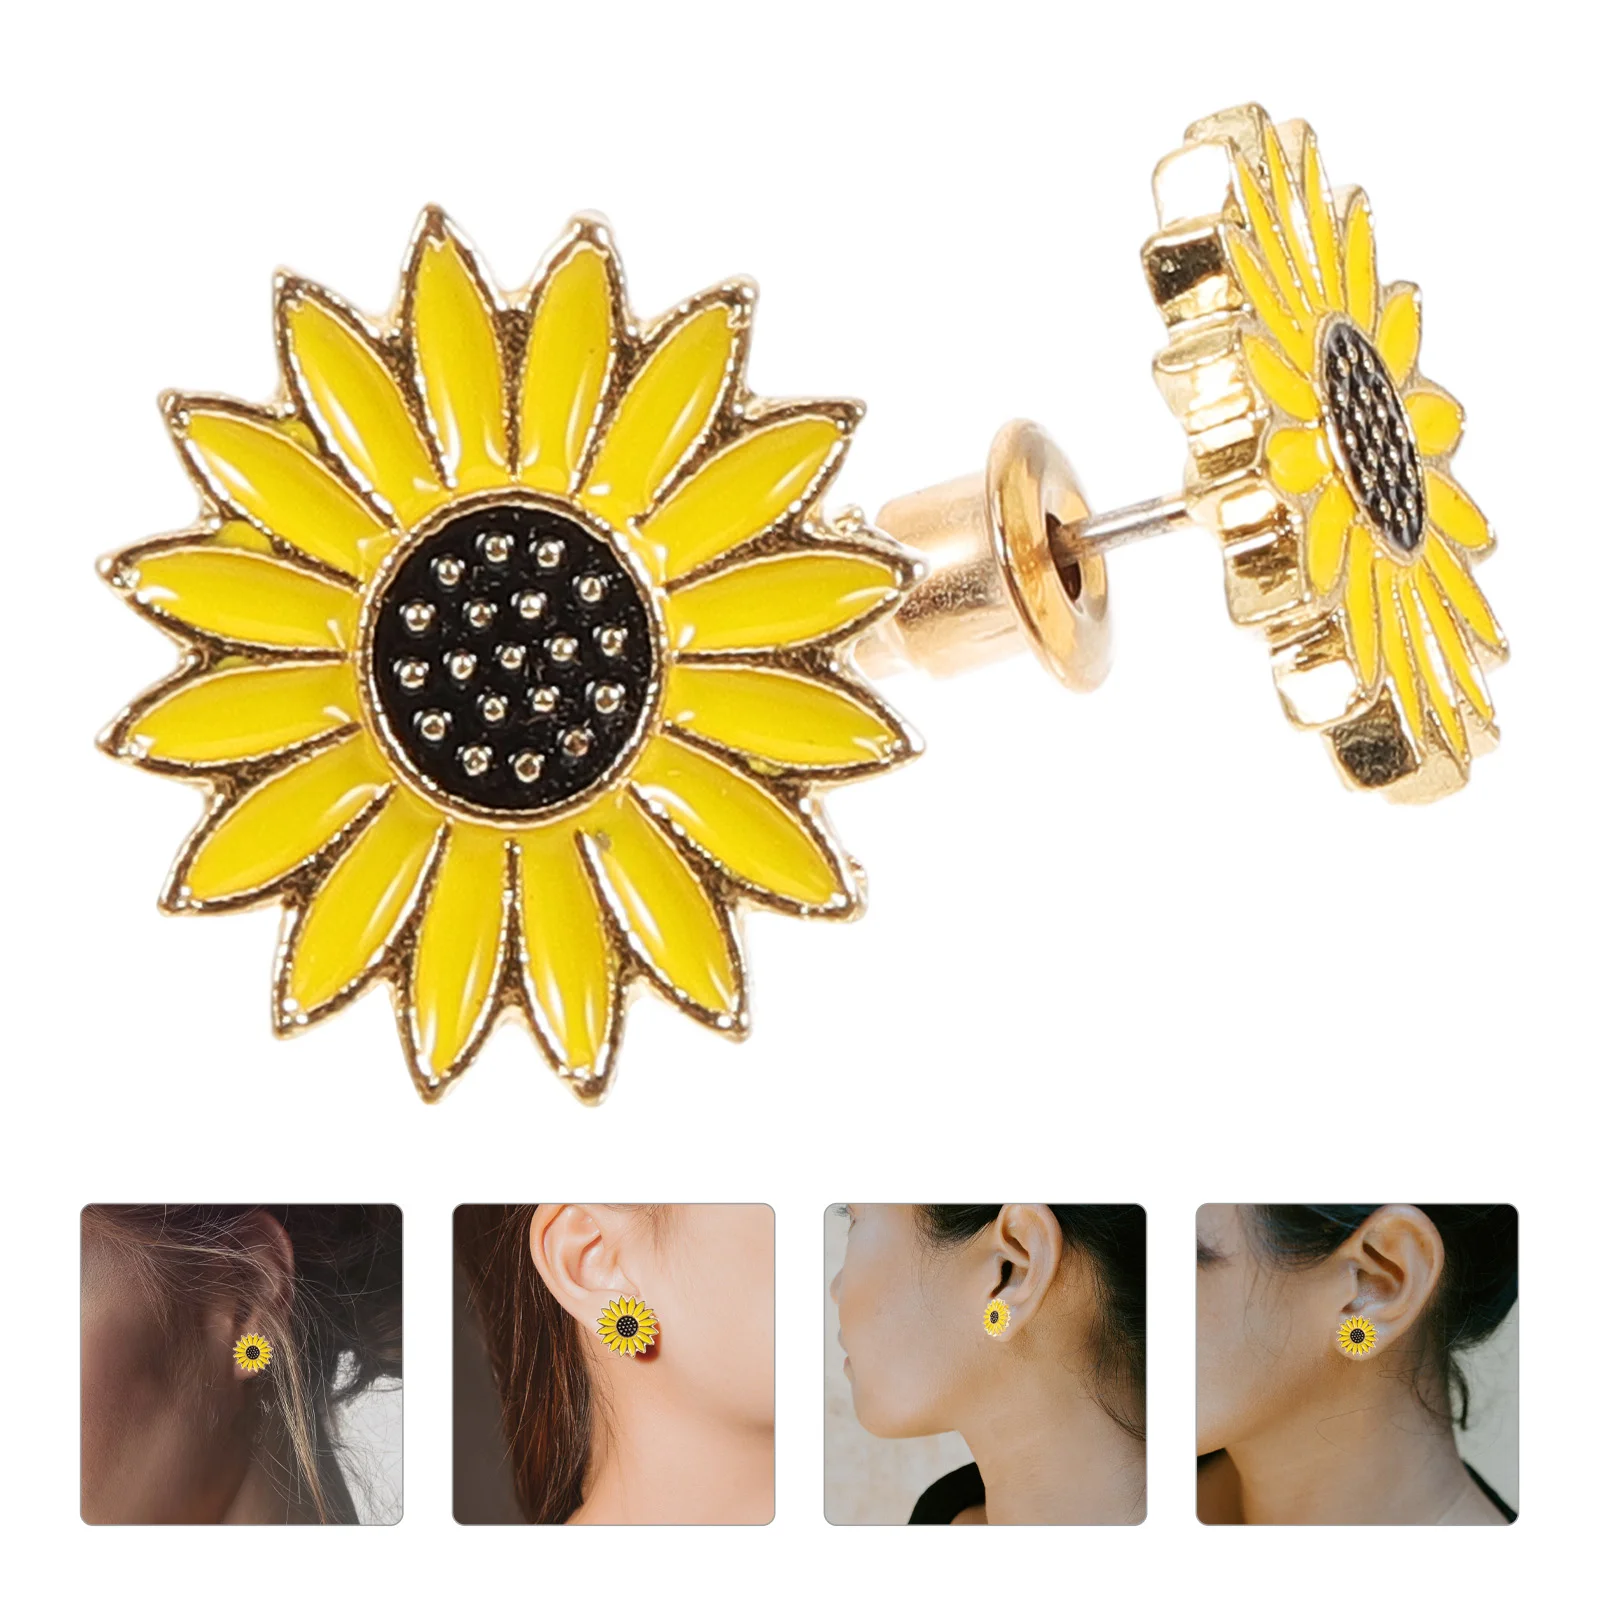 

1 Pair Ear Studs Teen Girls Sunflower Earrings Women Fashionable Earrings Cute Ear Jewelries